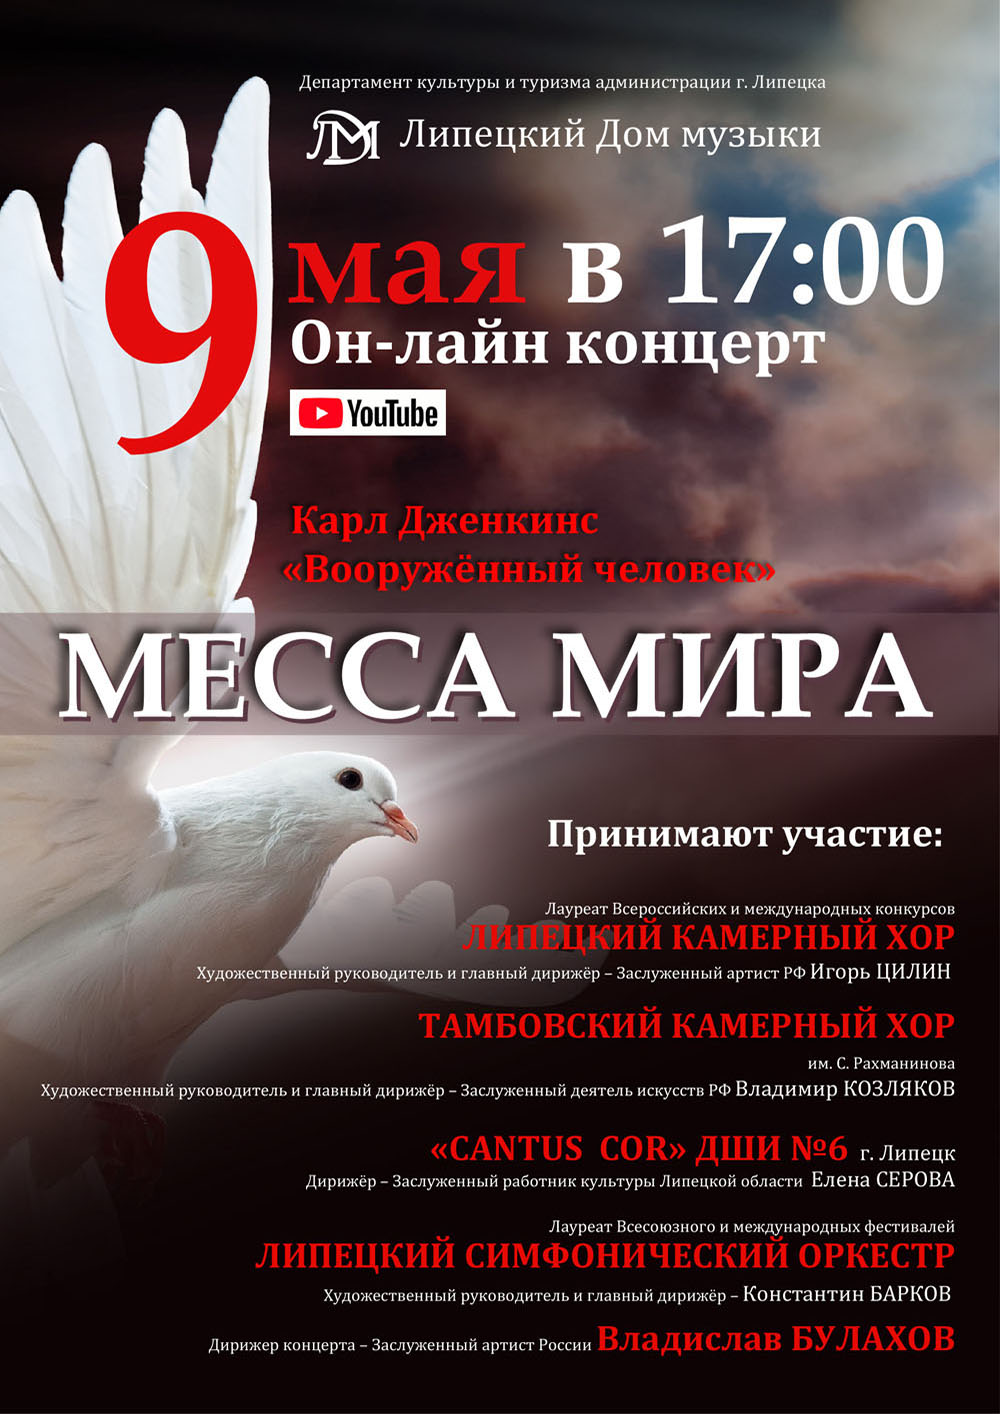 Онлайн-концерт: Месса мира (09.05.2020 в 17:00)